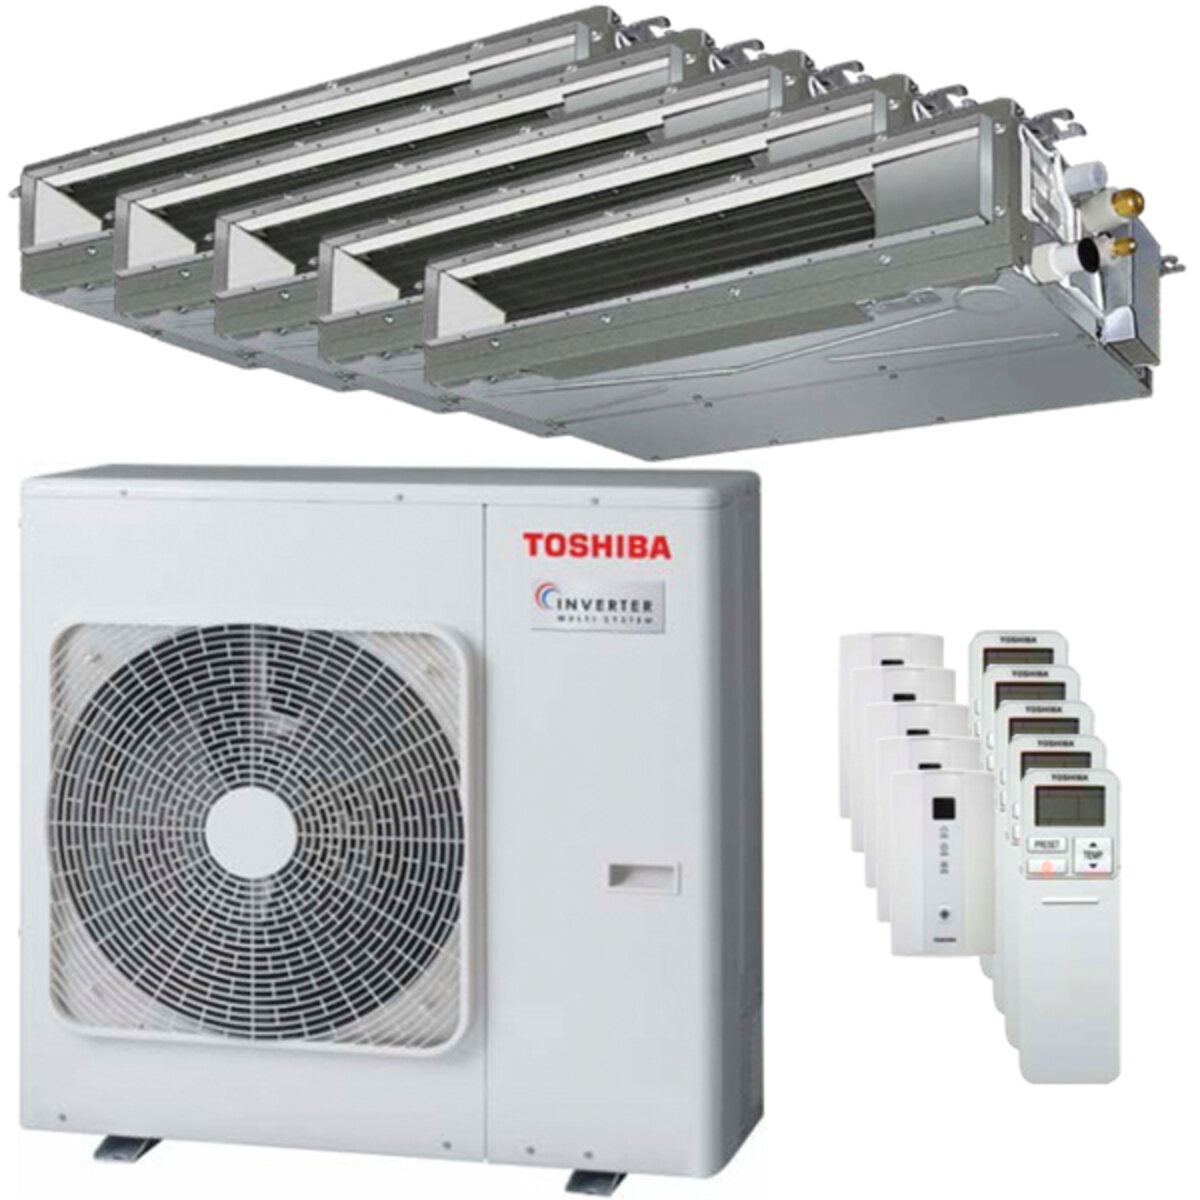 Toshiba Ductable Air Conditioner U2 penta split 7000 + 7000 + 7000 + 7000 + 7000 BTU inverter A++ unité extérieure 10,0 kW